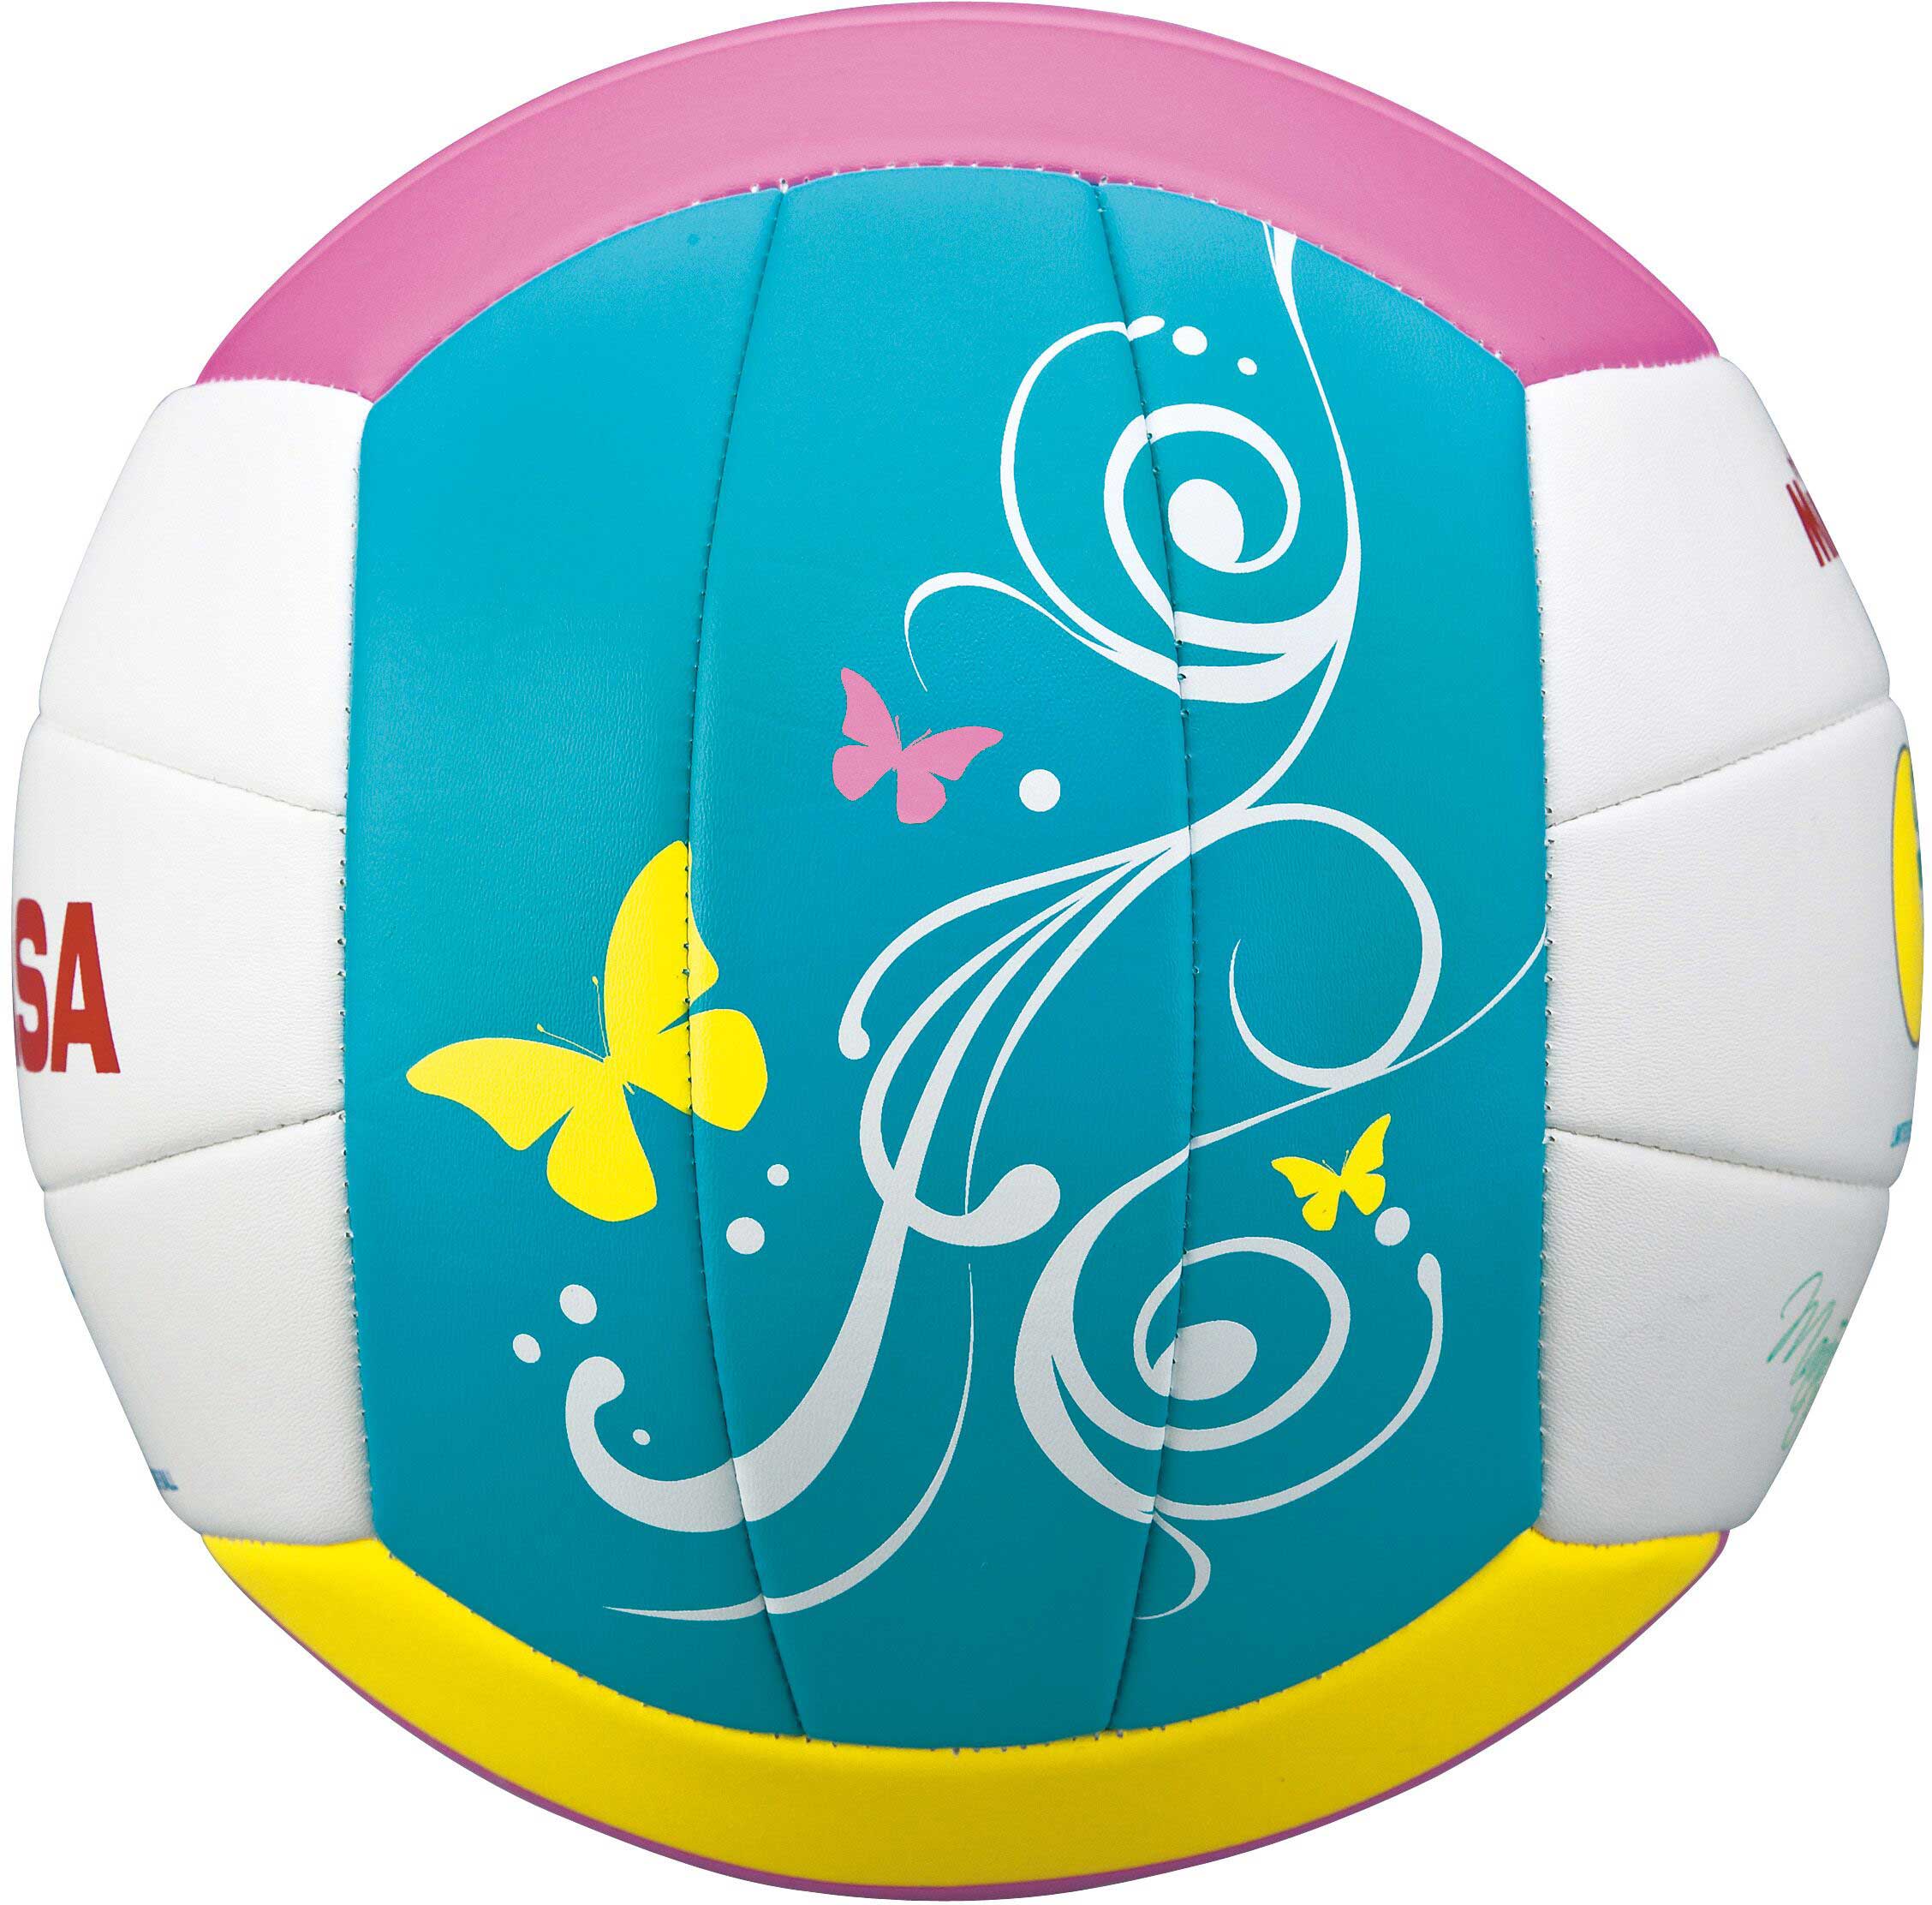 Ball für den Beachvolleyball